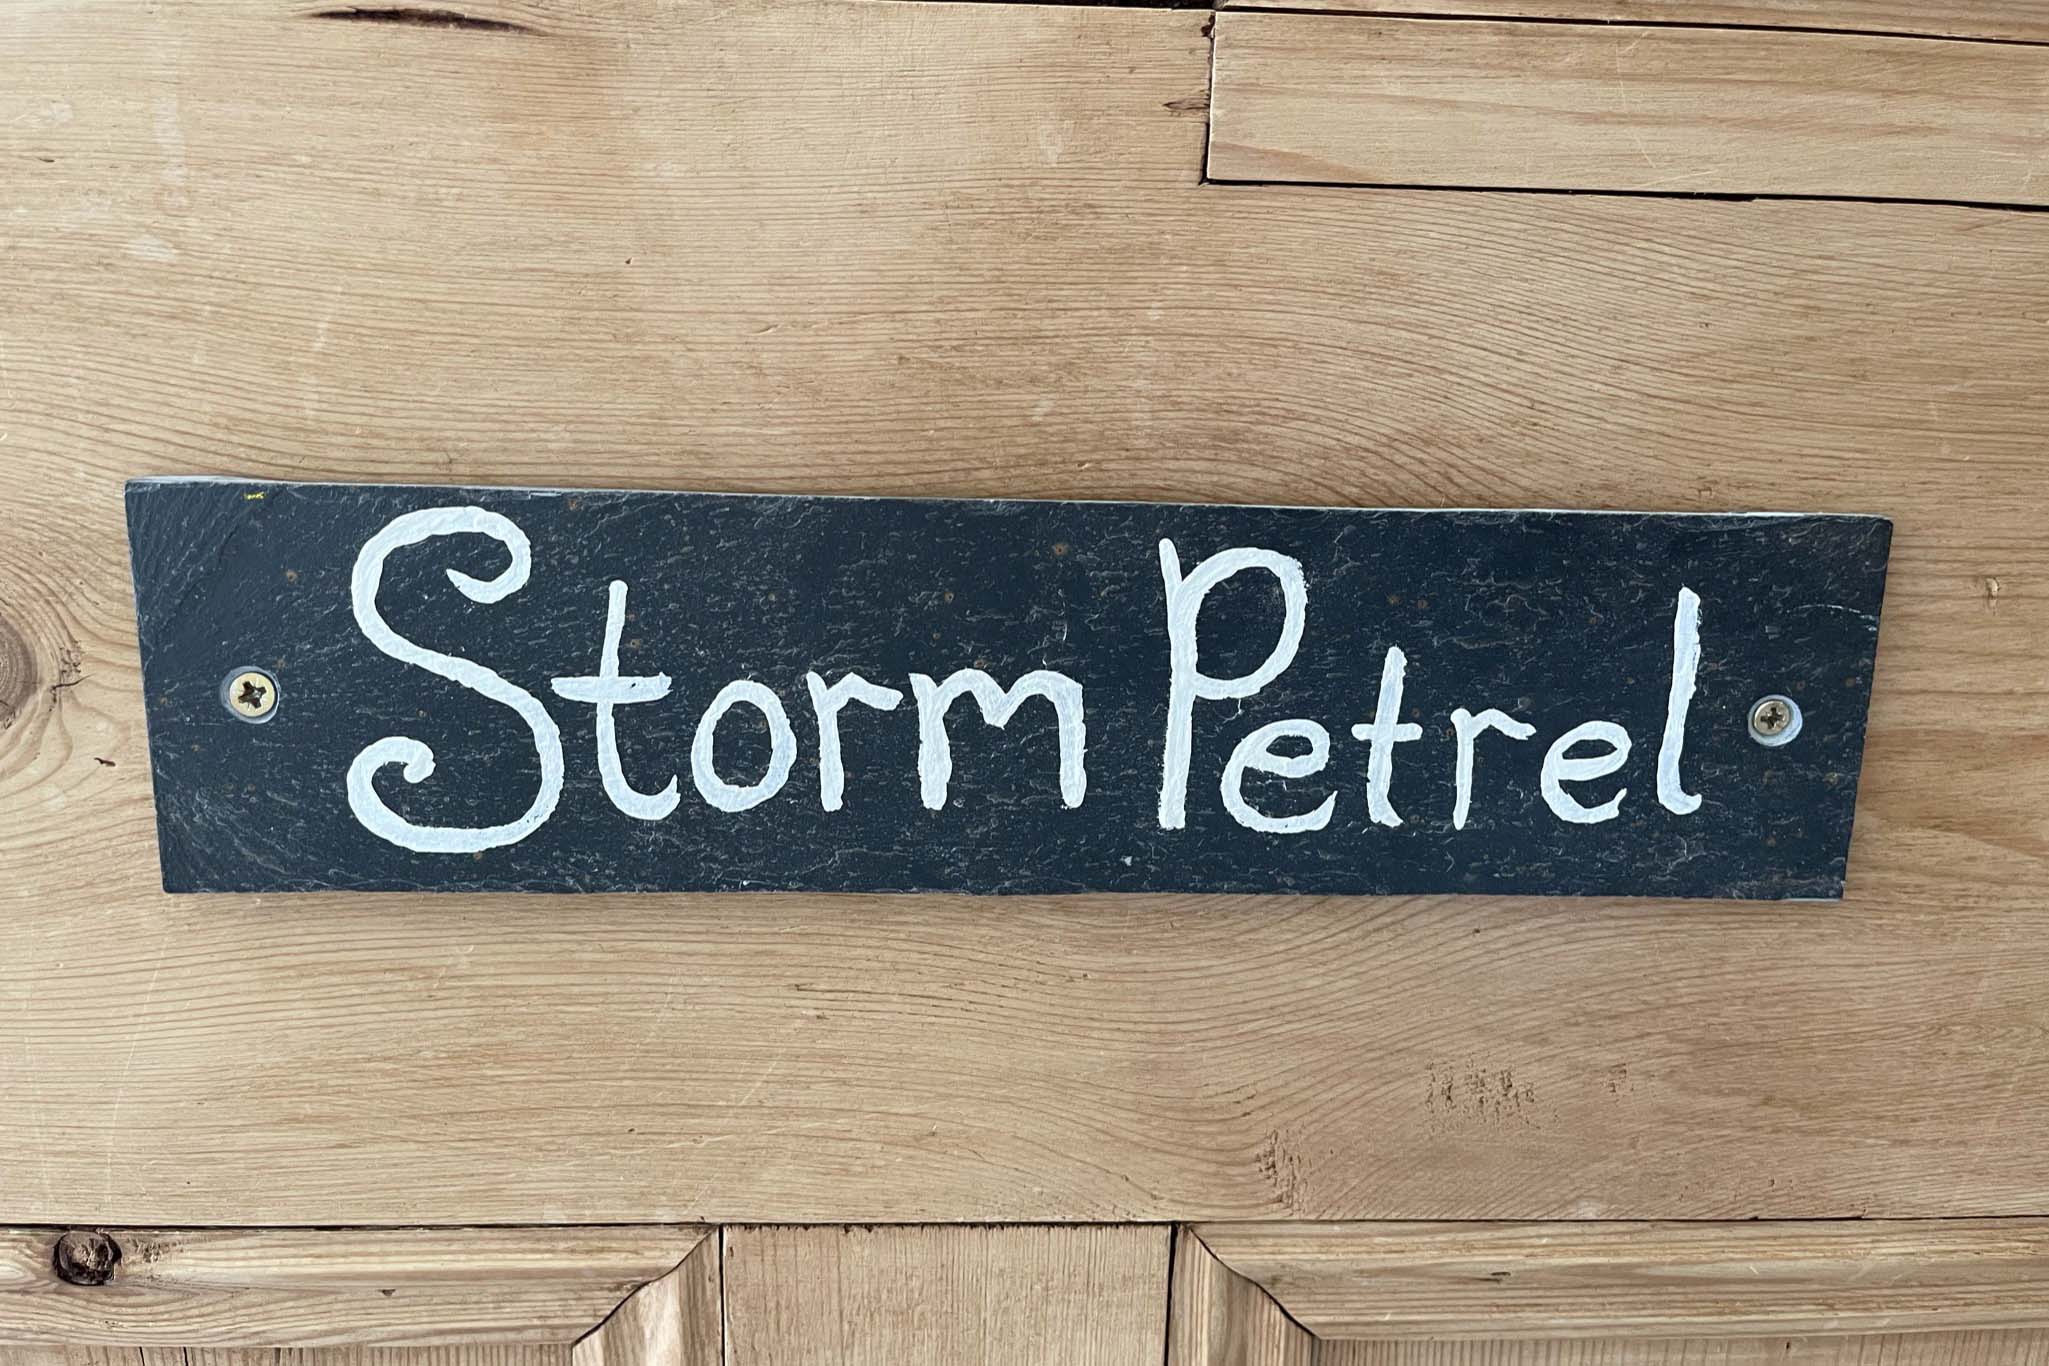 Storm Petrel door plate